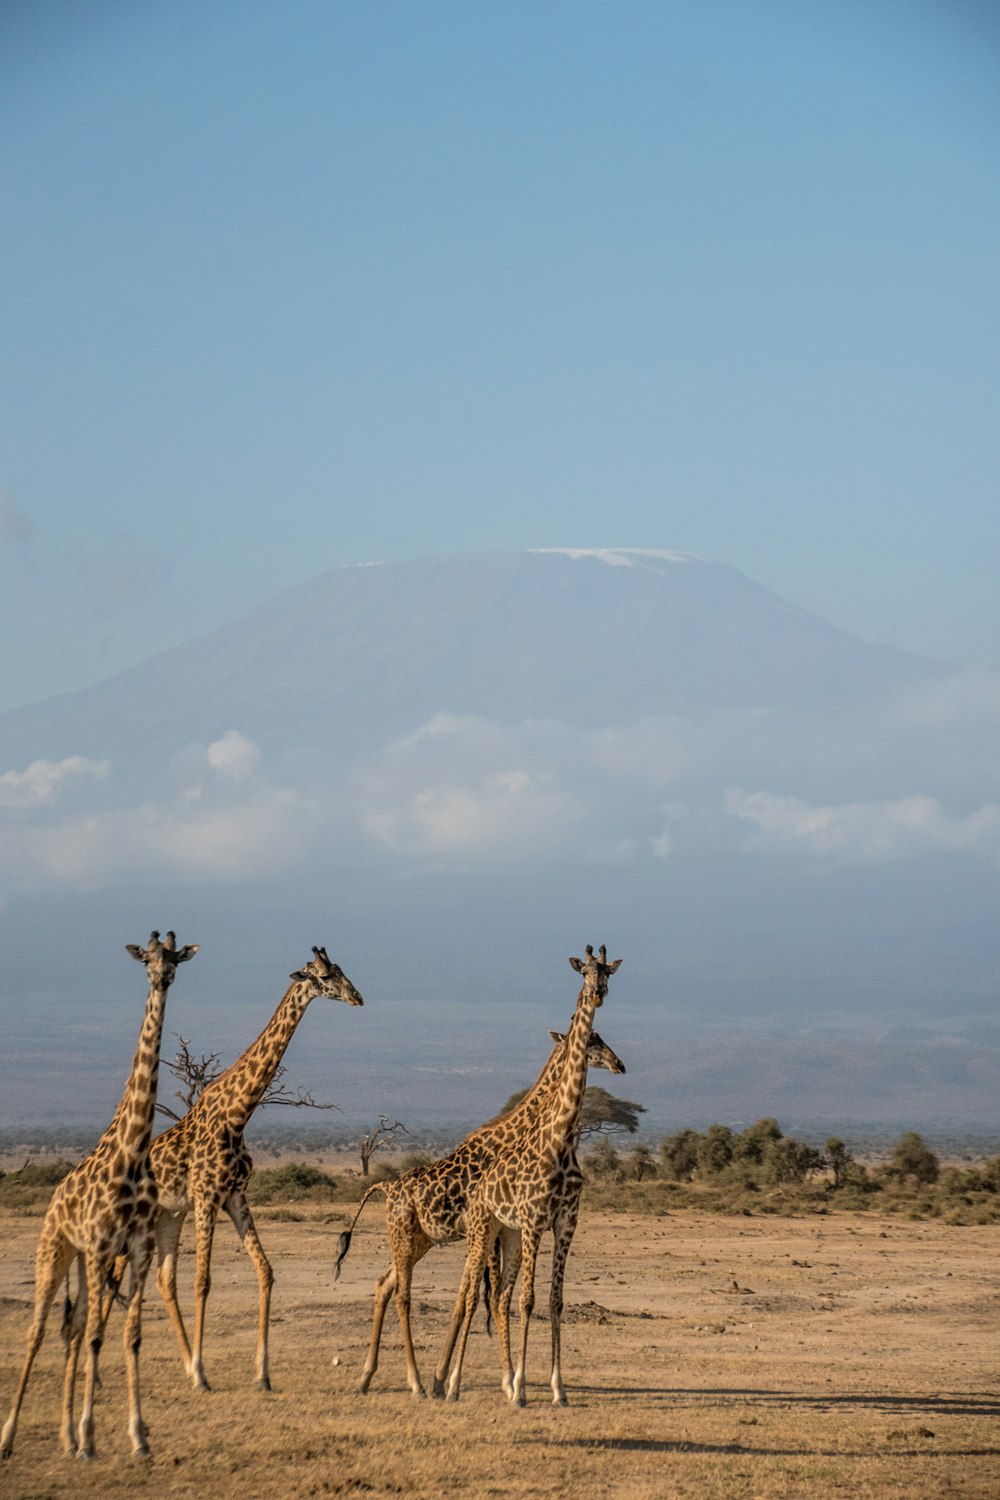 a group of giraffes walking across a dry grass field